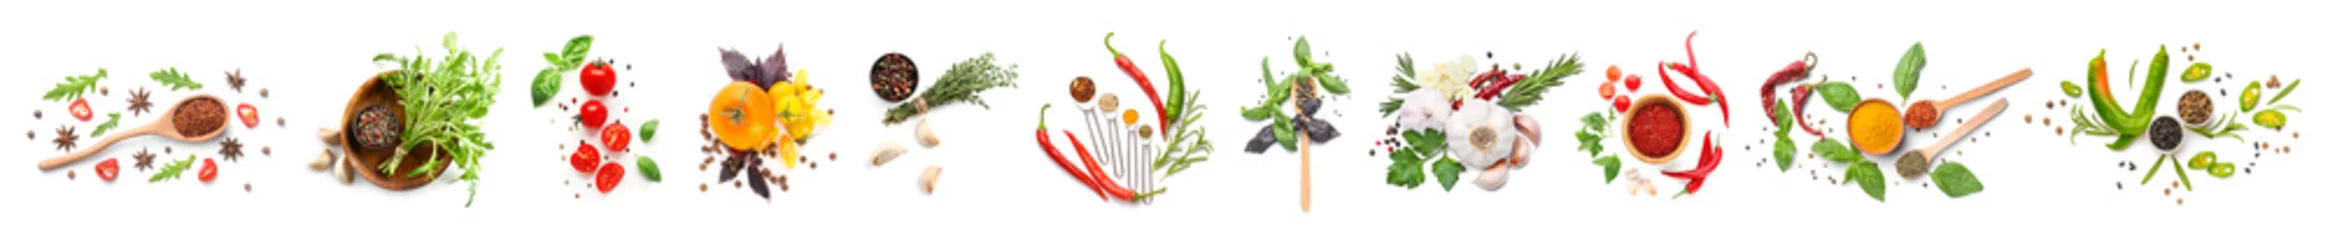 Foto auf Acrylglas Frisches Gemüse Verschiedene frische Gewürze, Kräuter und Gemüse auf weißem Hintergrund